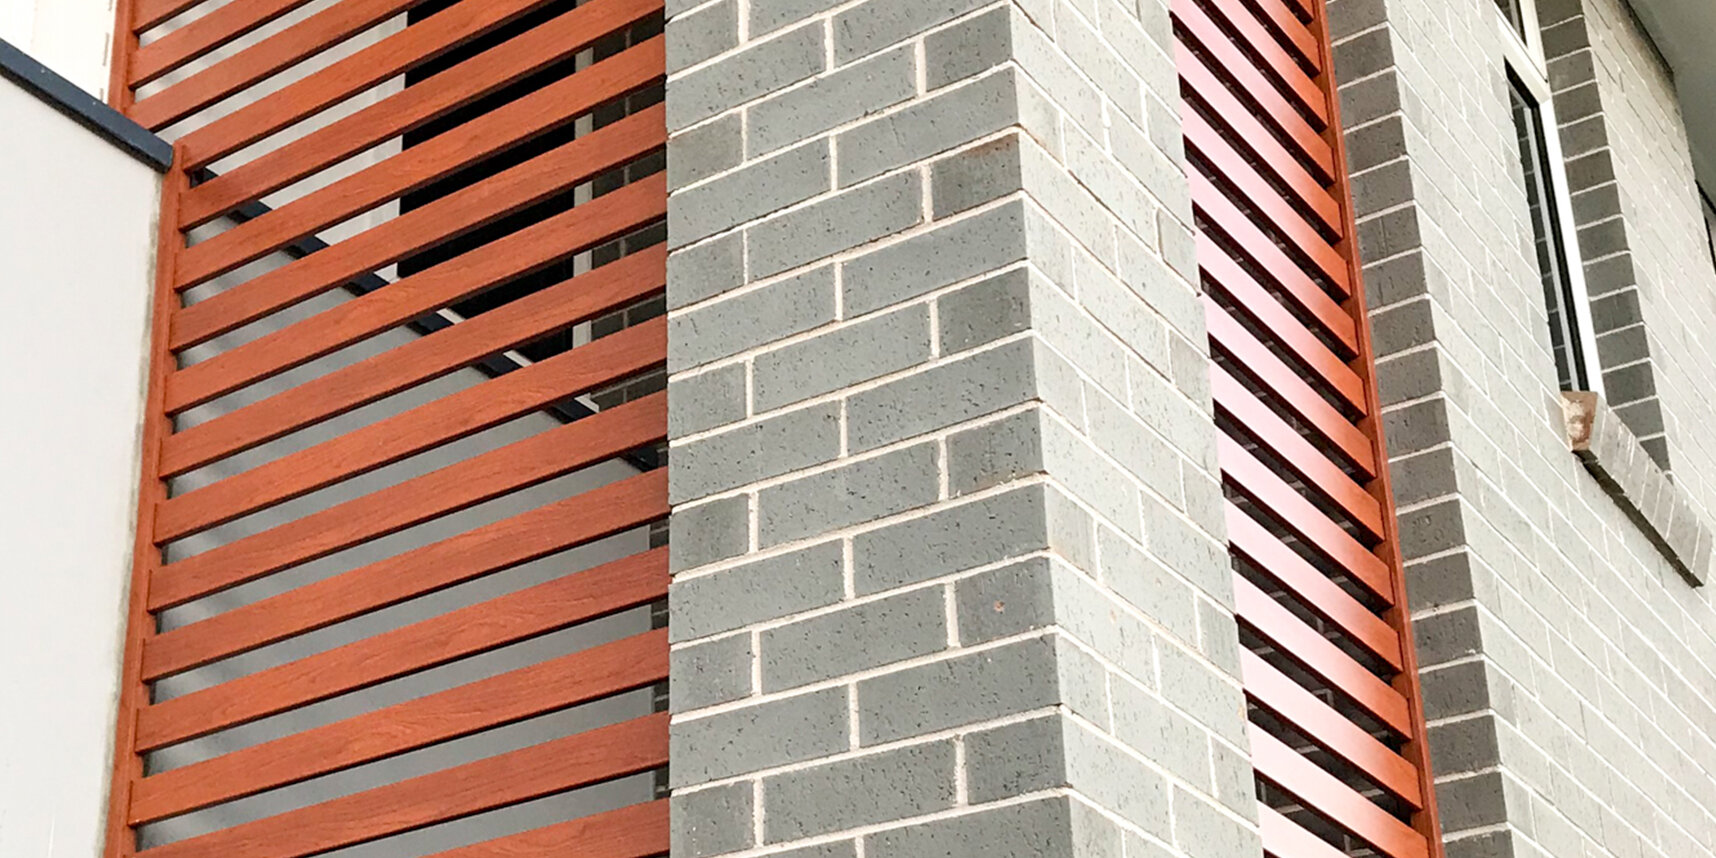 knotwood aluminium facade screen install Green fox Metals